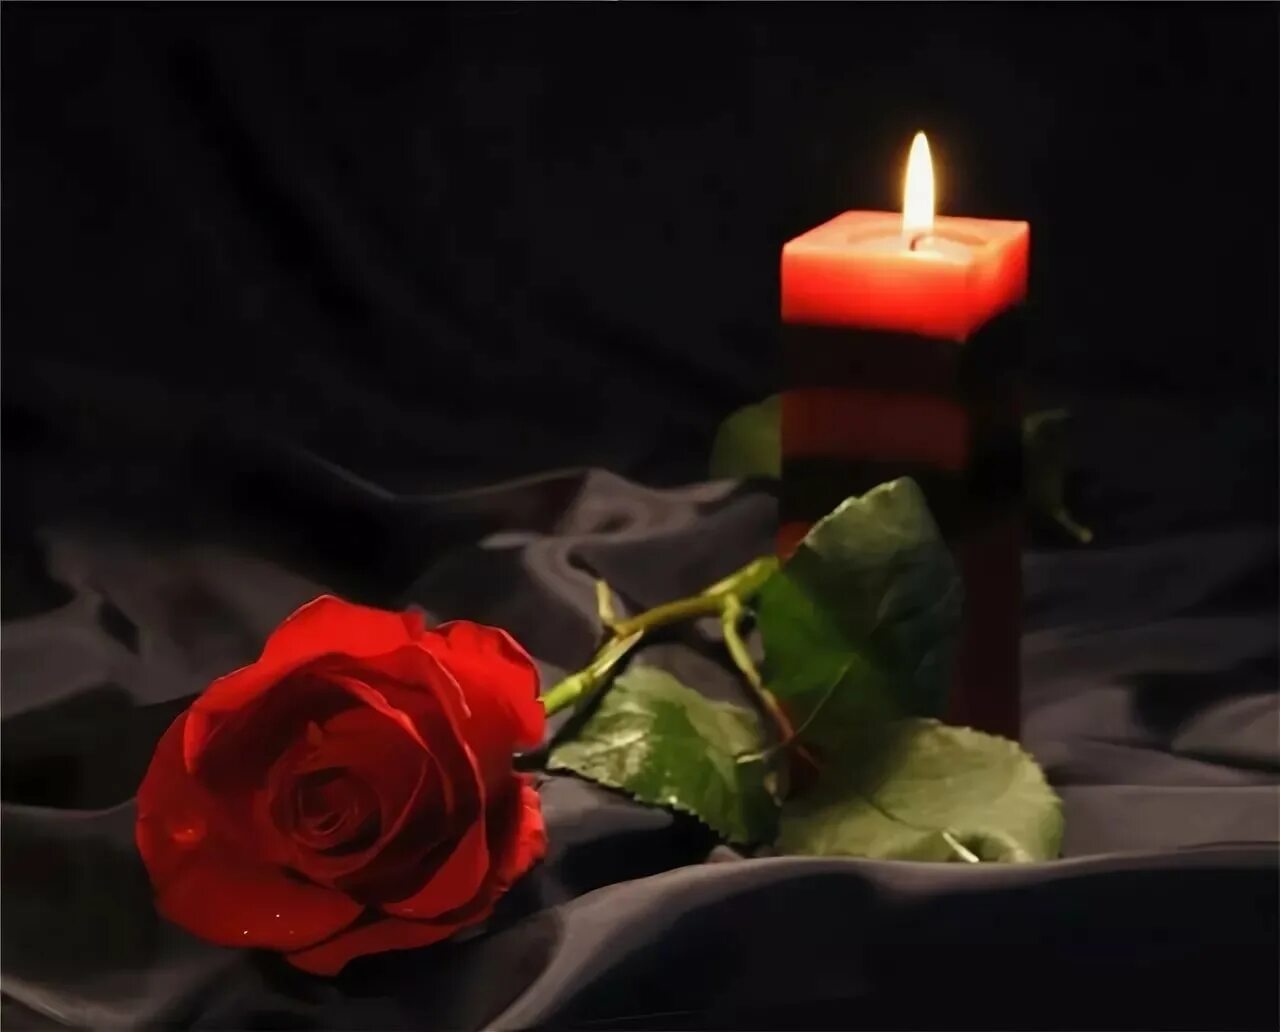 Тоскую по умершему. Траурные свечи и цветы. Свеча памяти и цветы. Свеча и цветы траур. Траурные розы и свечи.